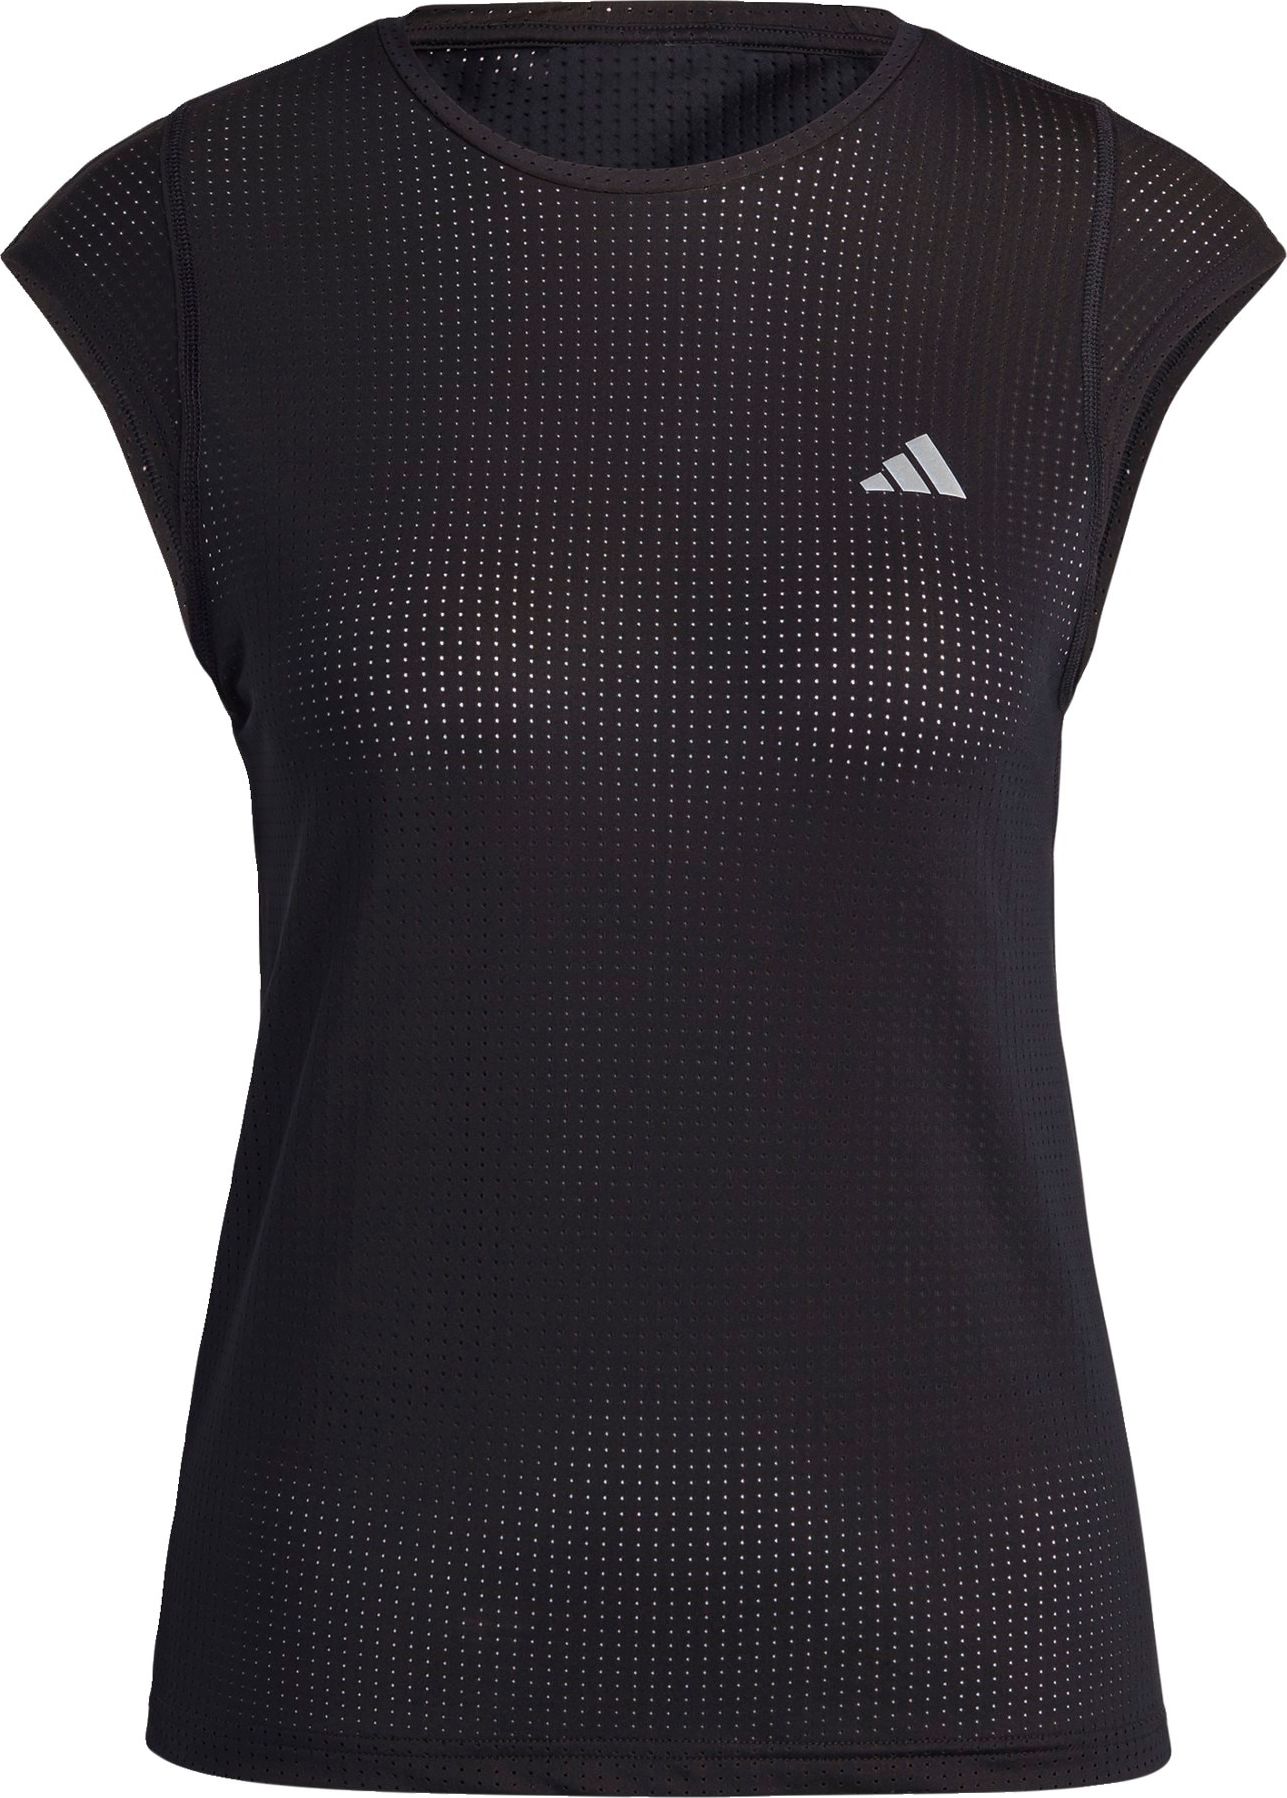 ADIDAS PERFORMANCE Funkční tričko 'Fast Running' černá / bílá